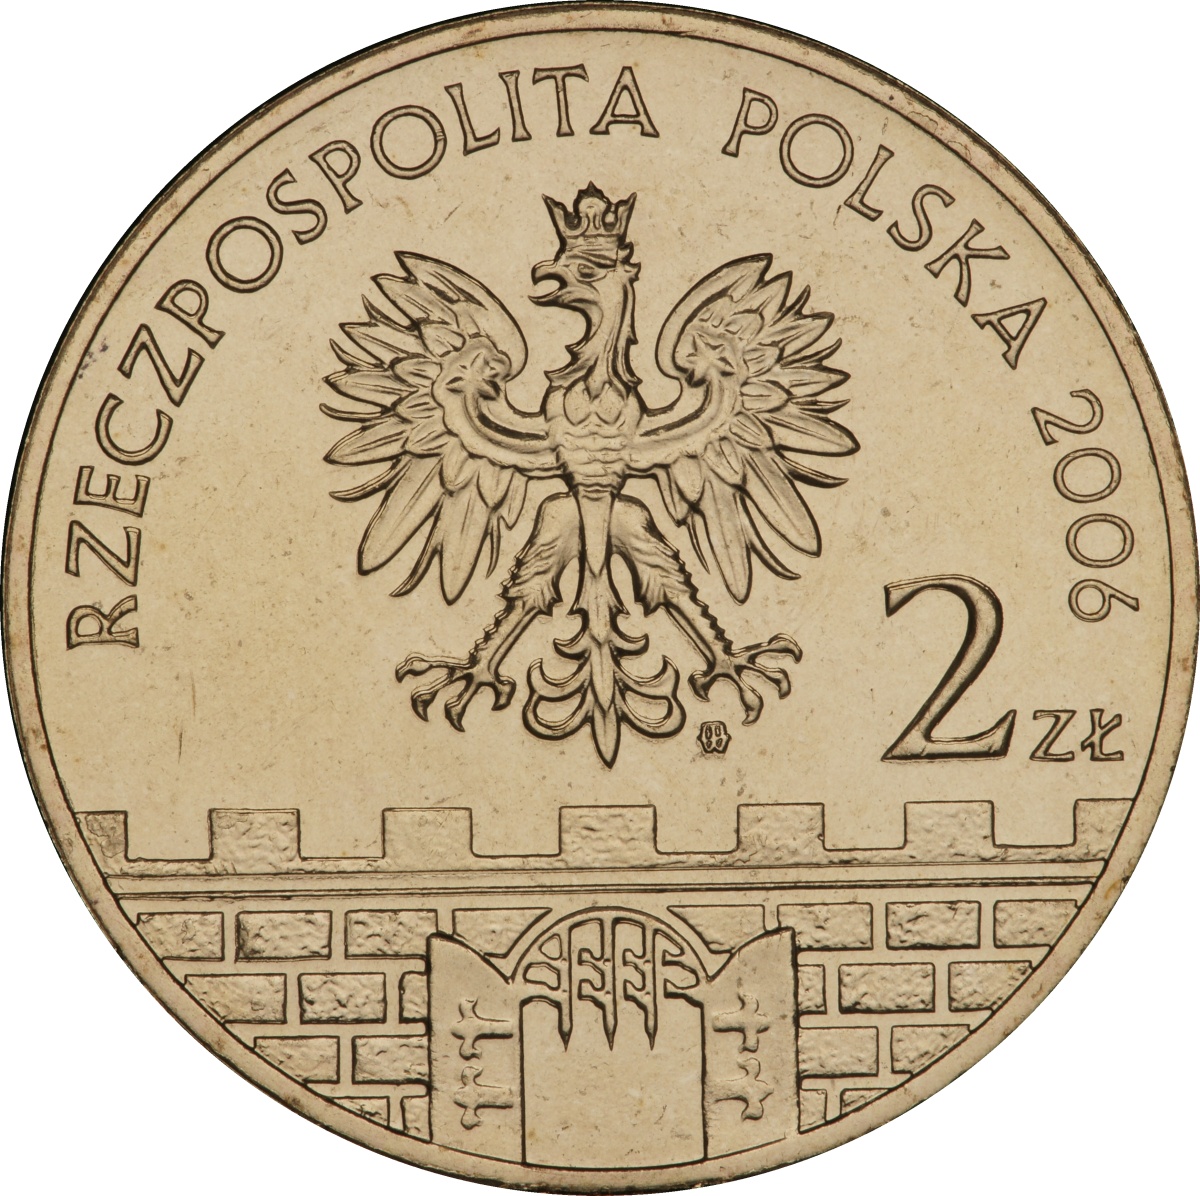 2zl-bochnia-awers-monety